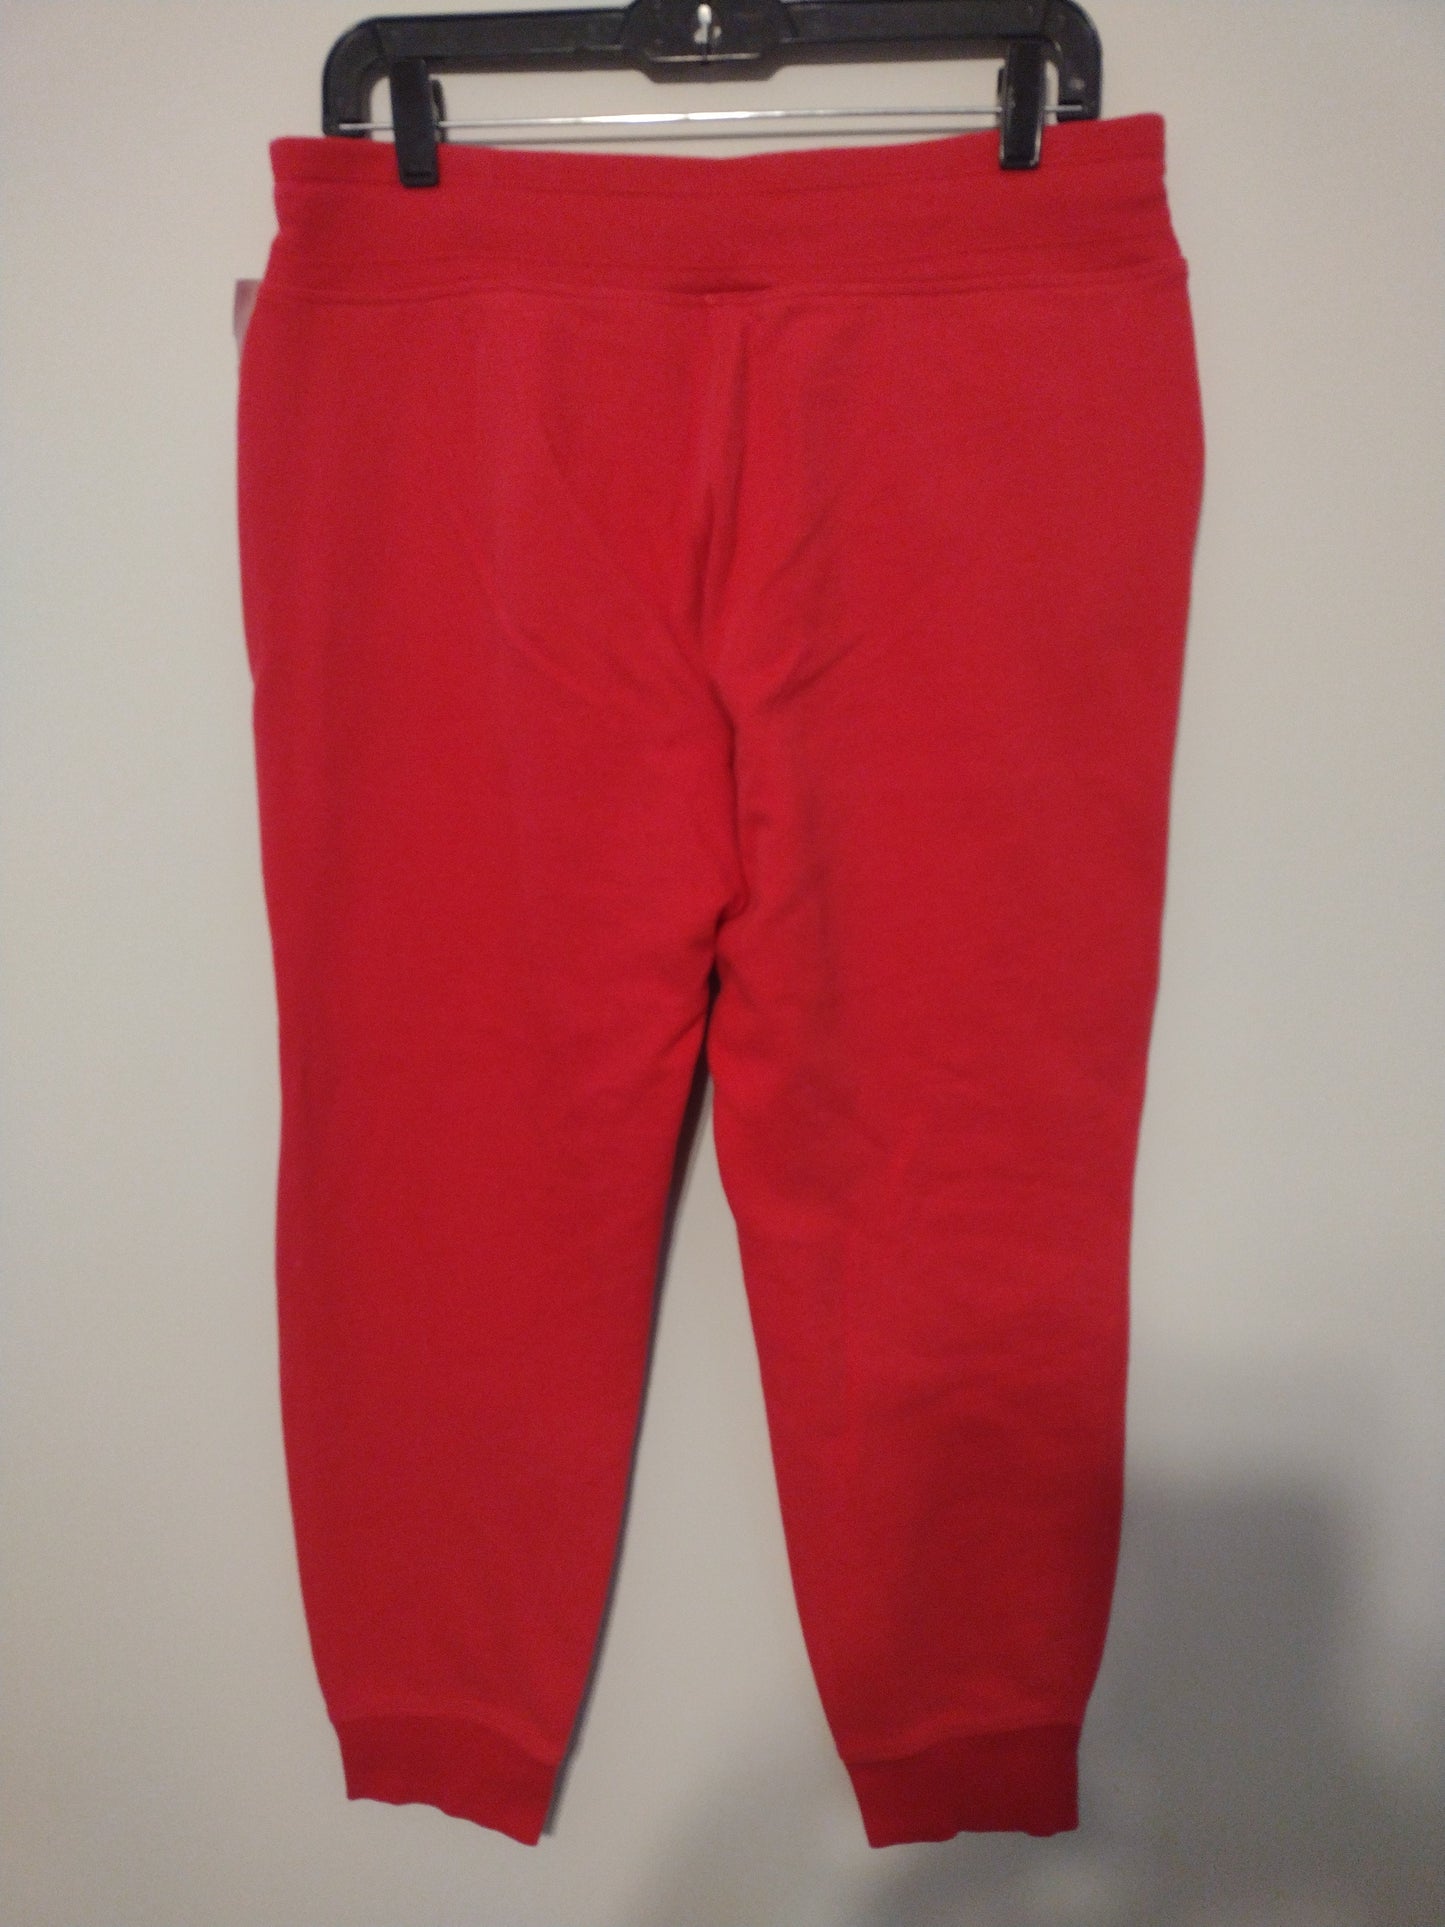 Pants Sweatpants By Calvin Klein  Size: M